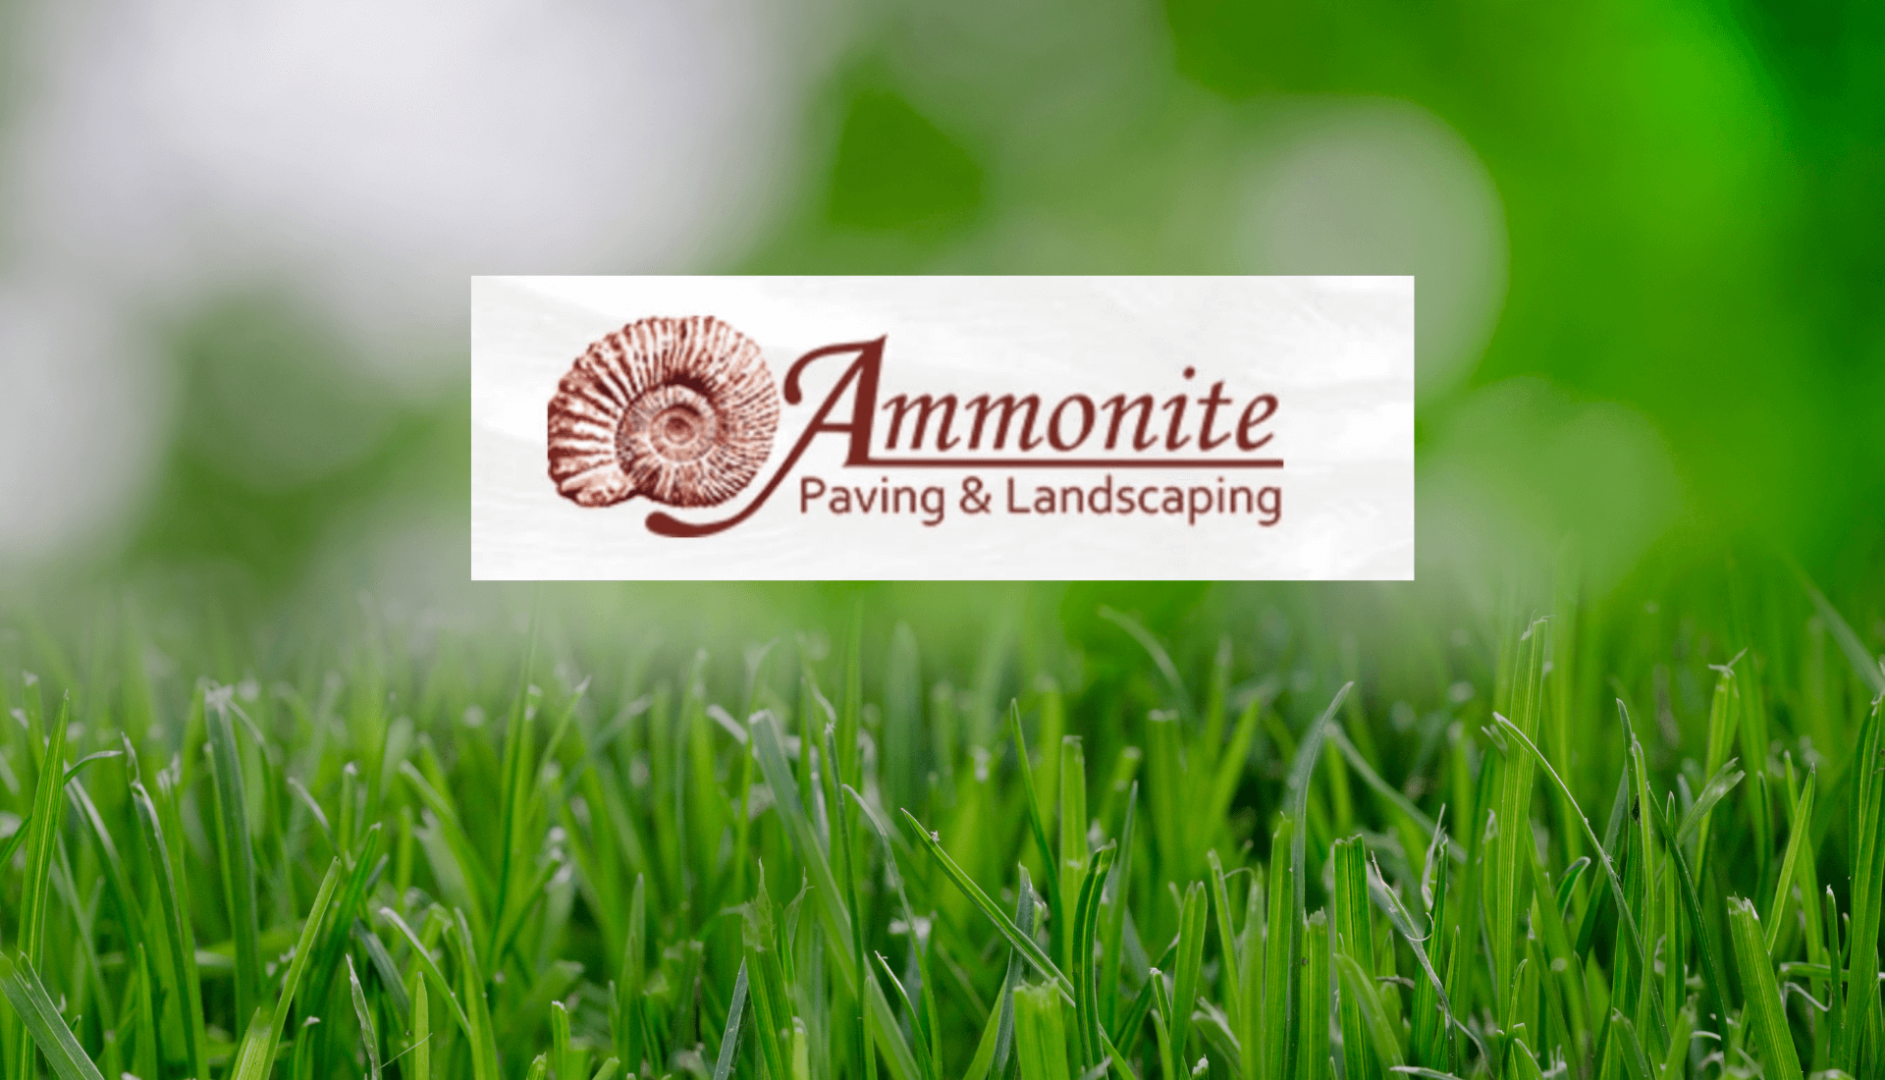 Ammonite Landscaping & Paving in Tewkesbury